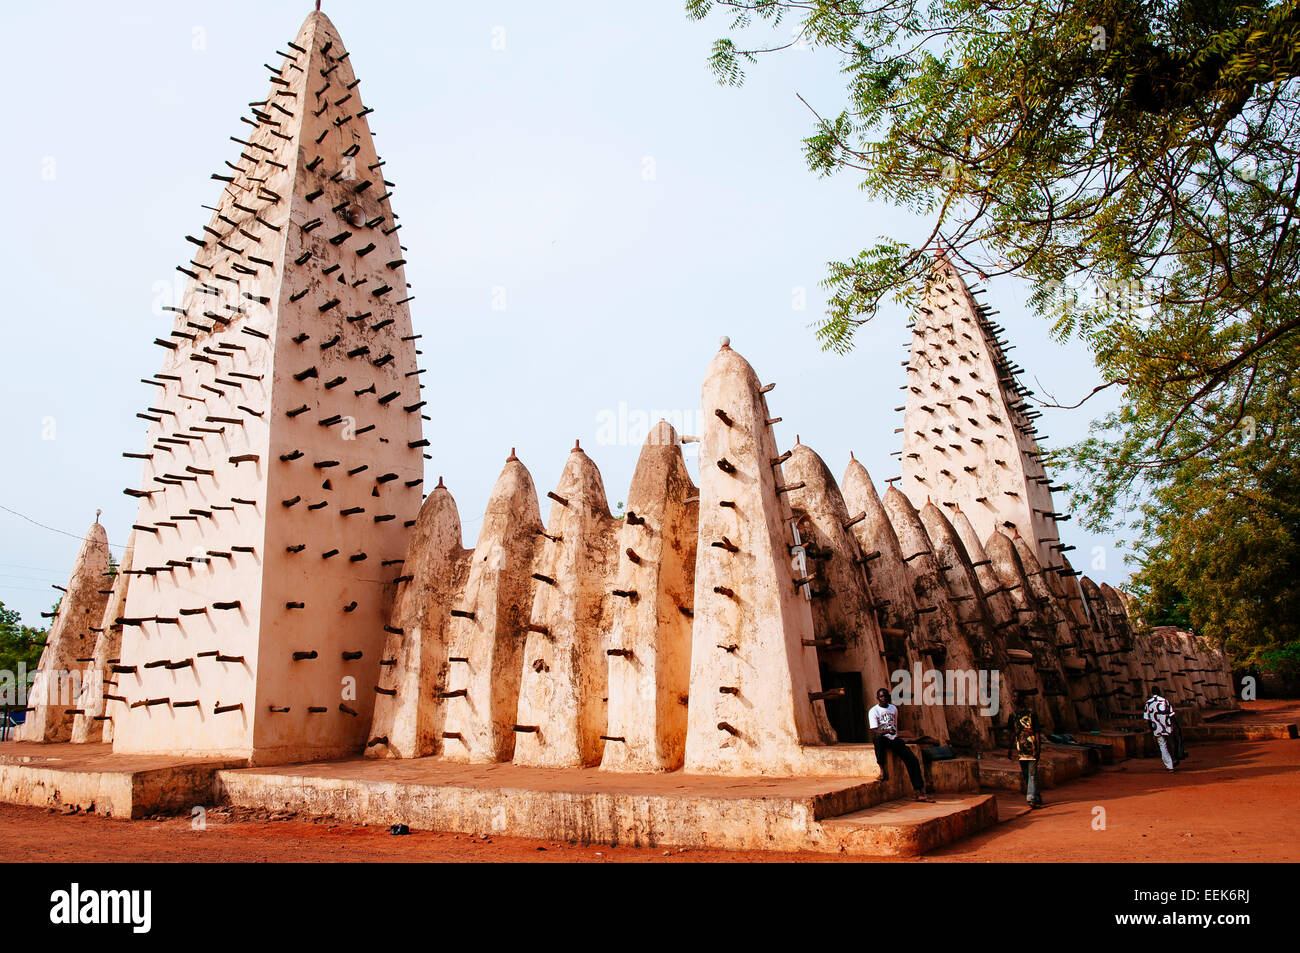 Mosquée de style soudanais, Bobo Dioulasso, Burkina Faso Banque D'Images